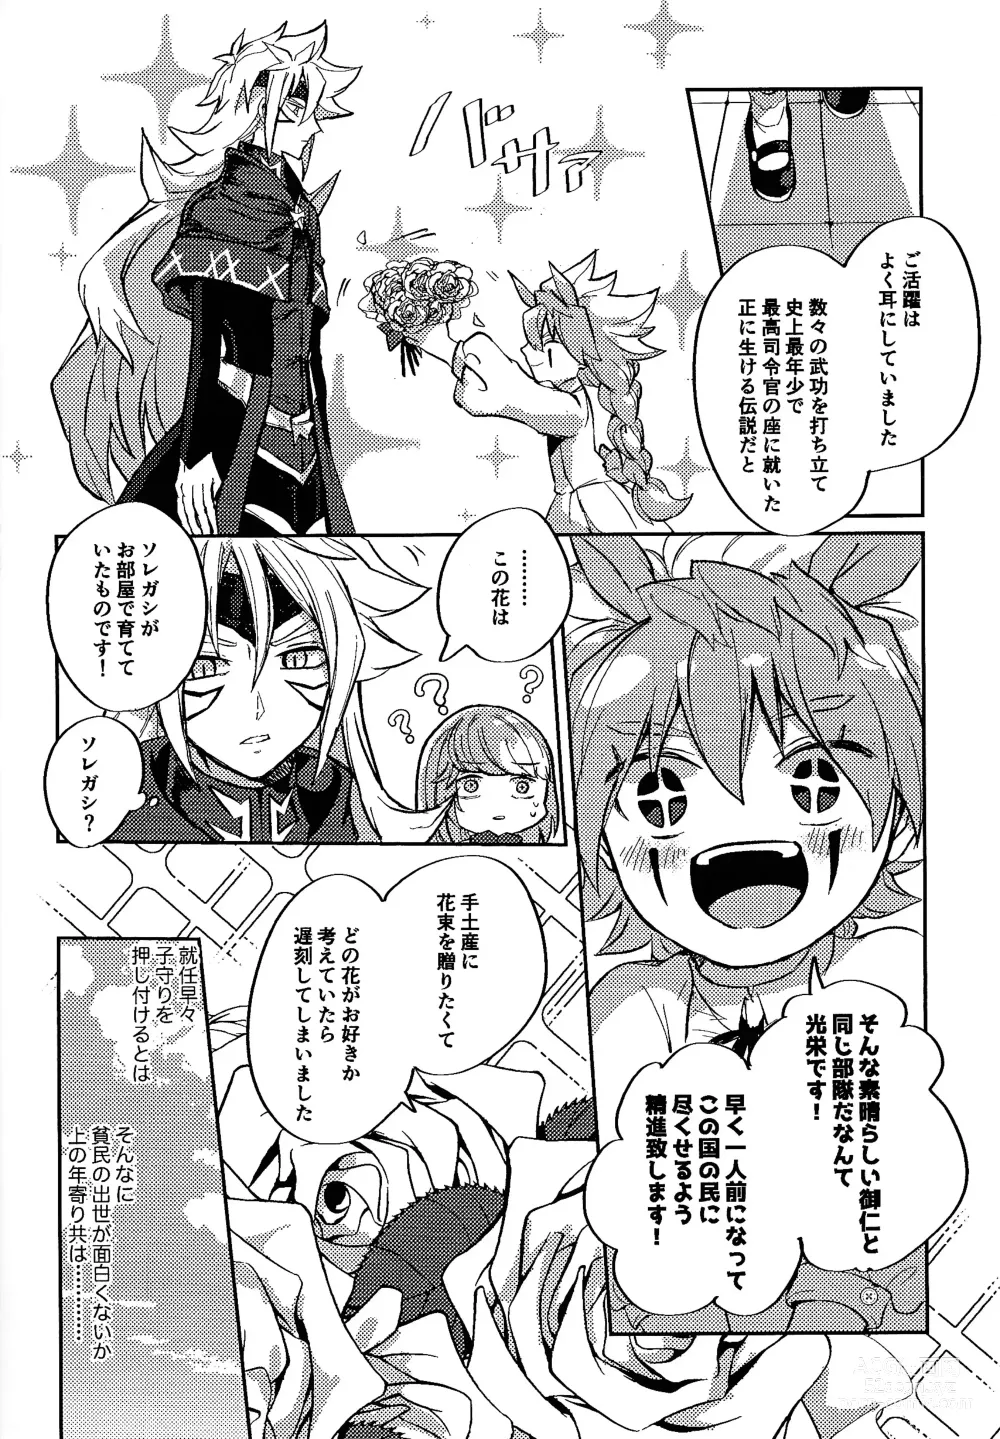 Page 9 of doujinshi Reimei ni sasagu